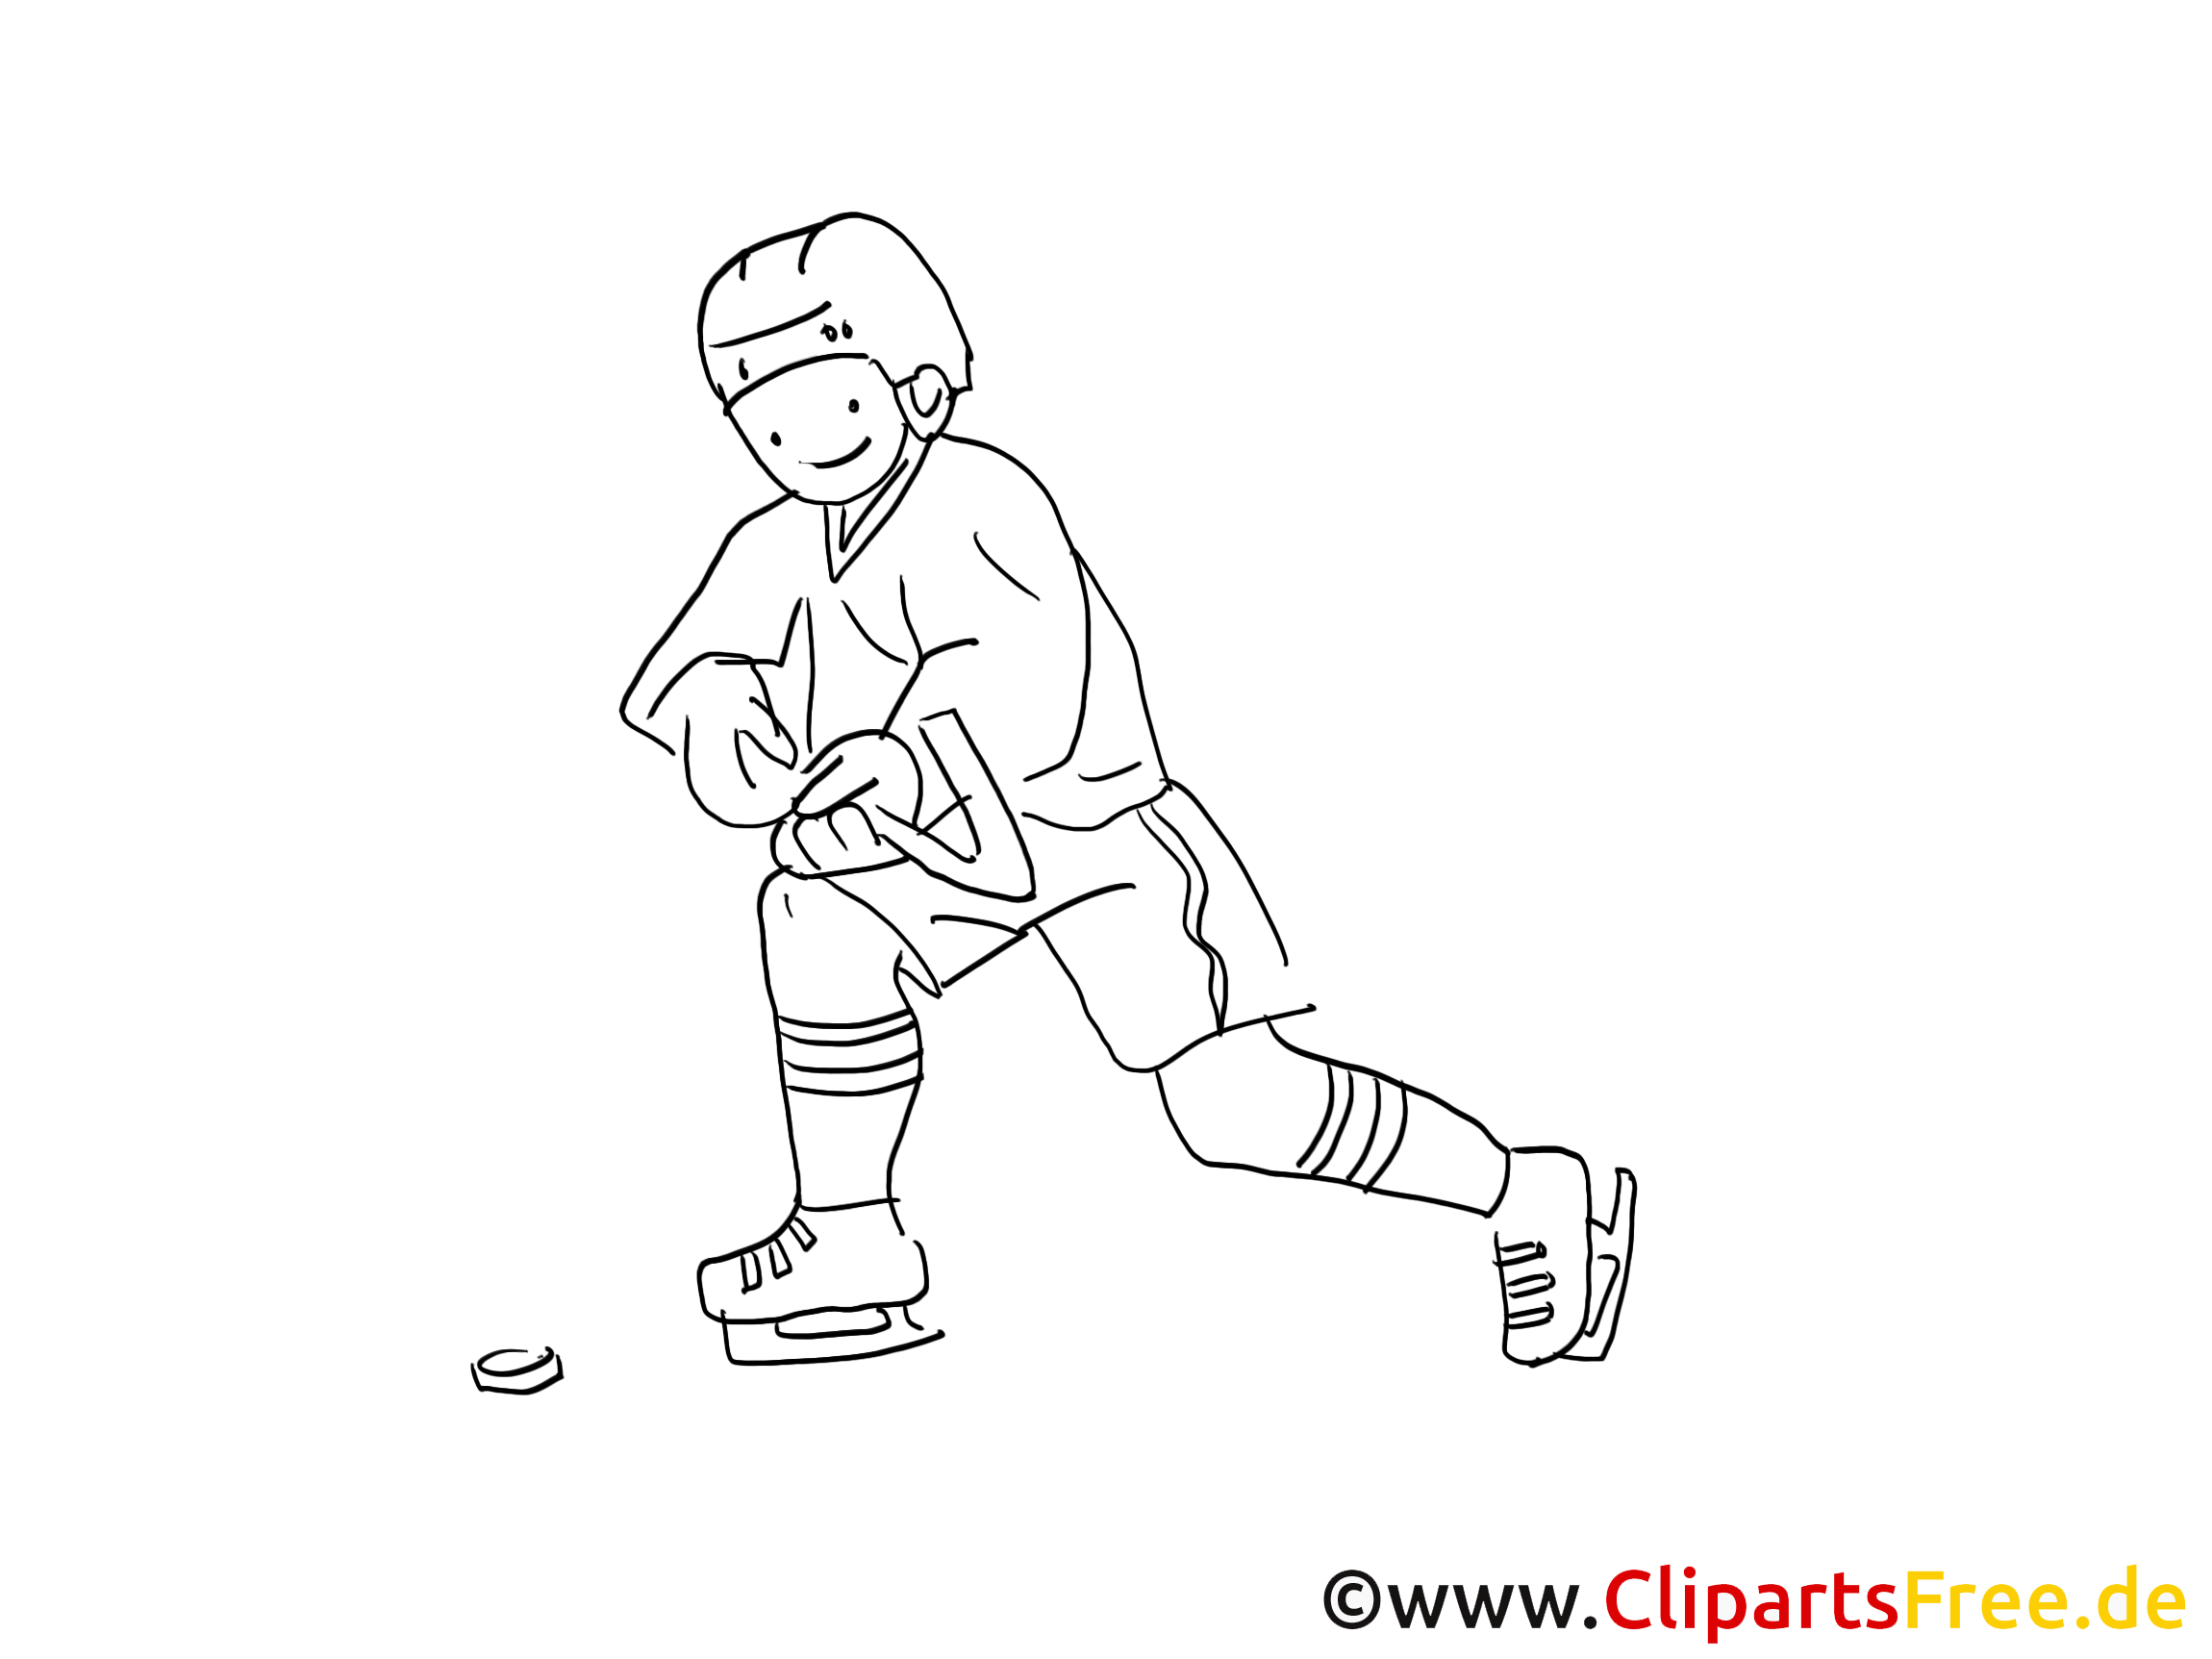 Cliparts gratuis à imprimer joueur - Hockey images